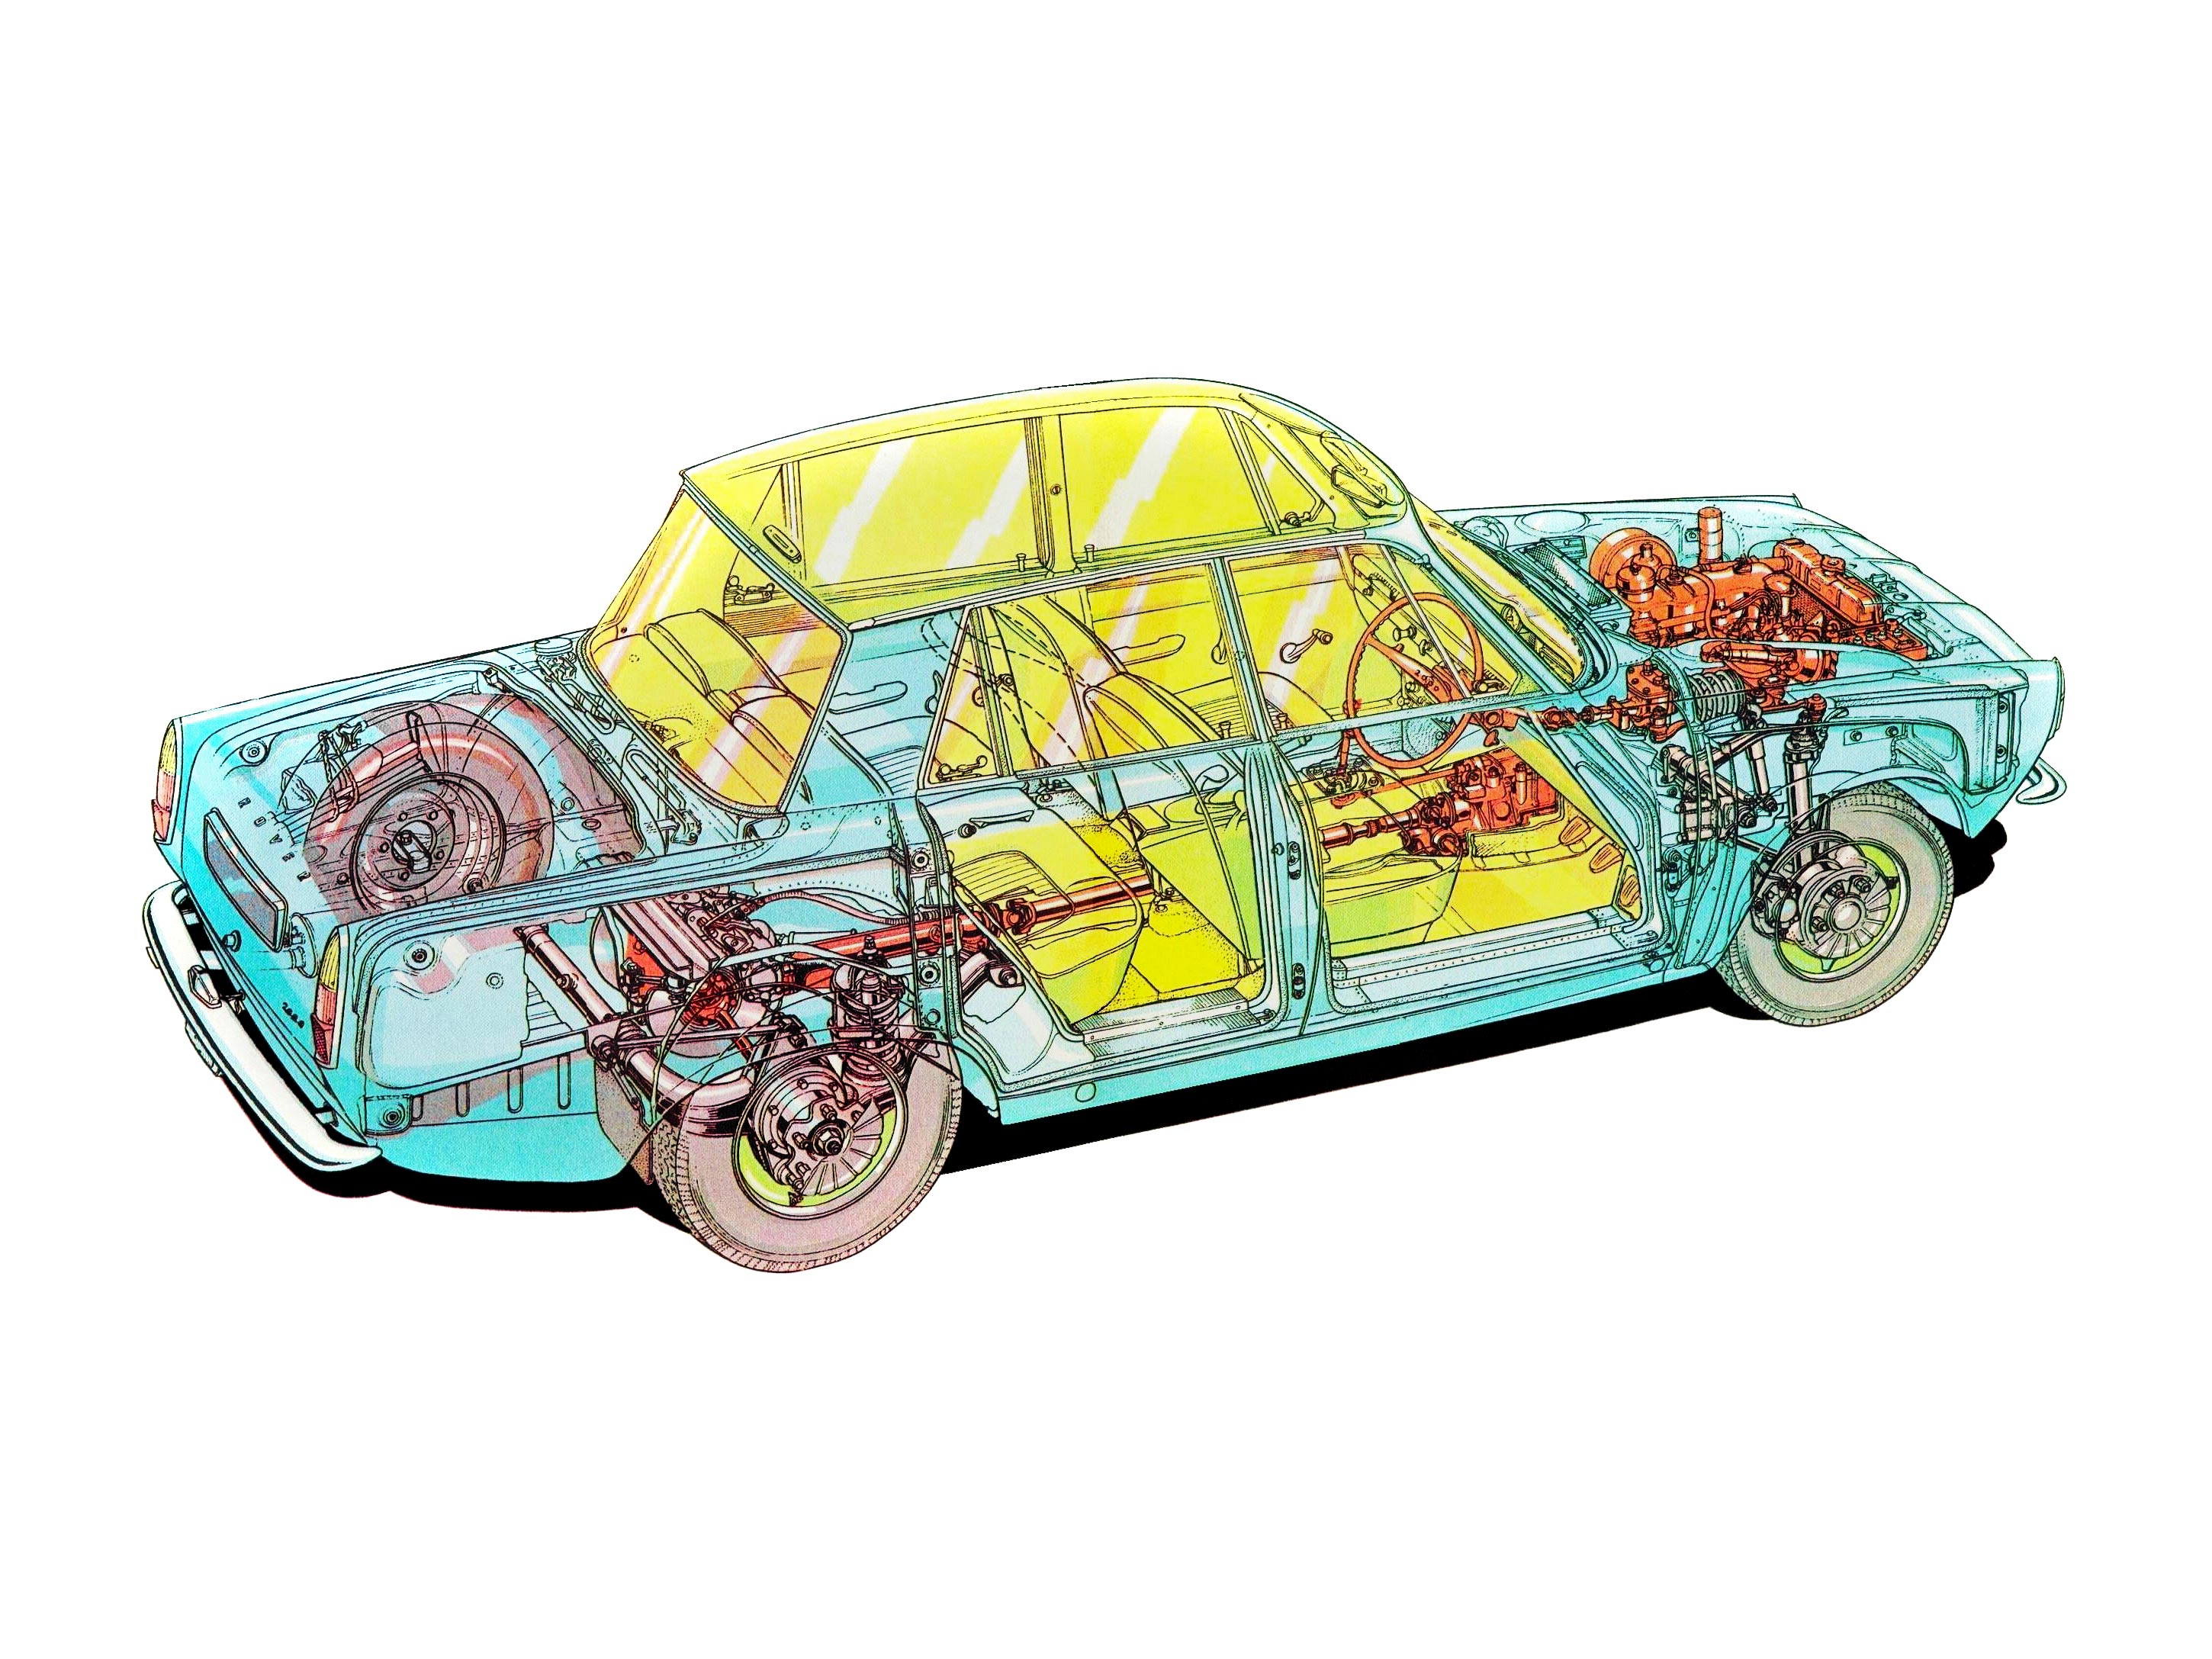 Rover 2000 cutaway drawing